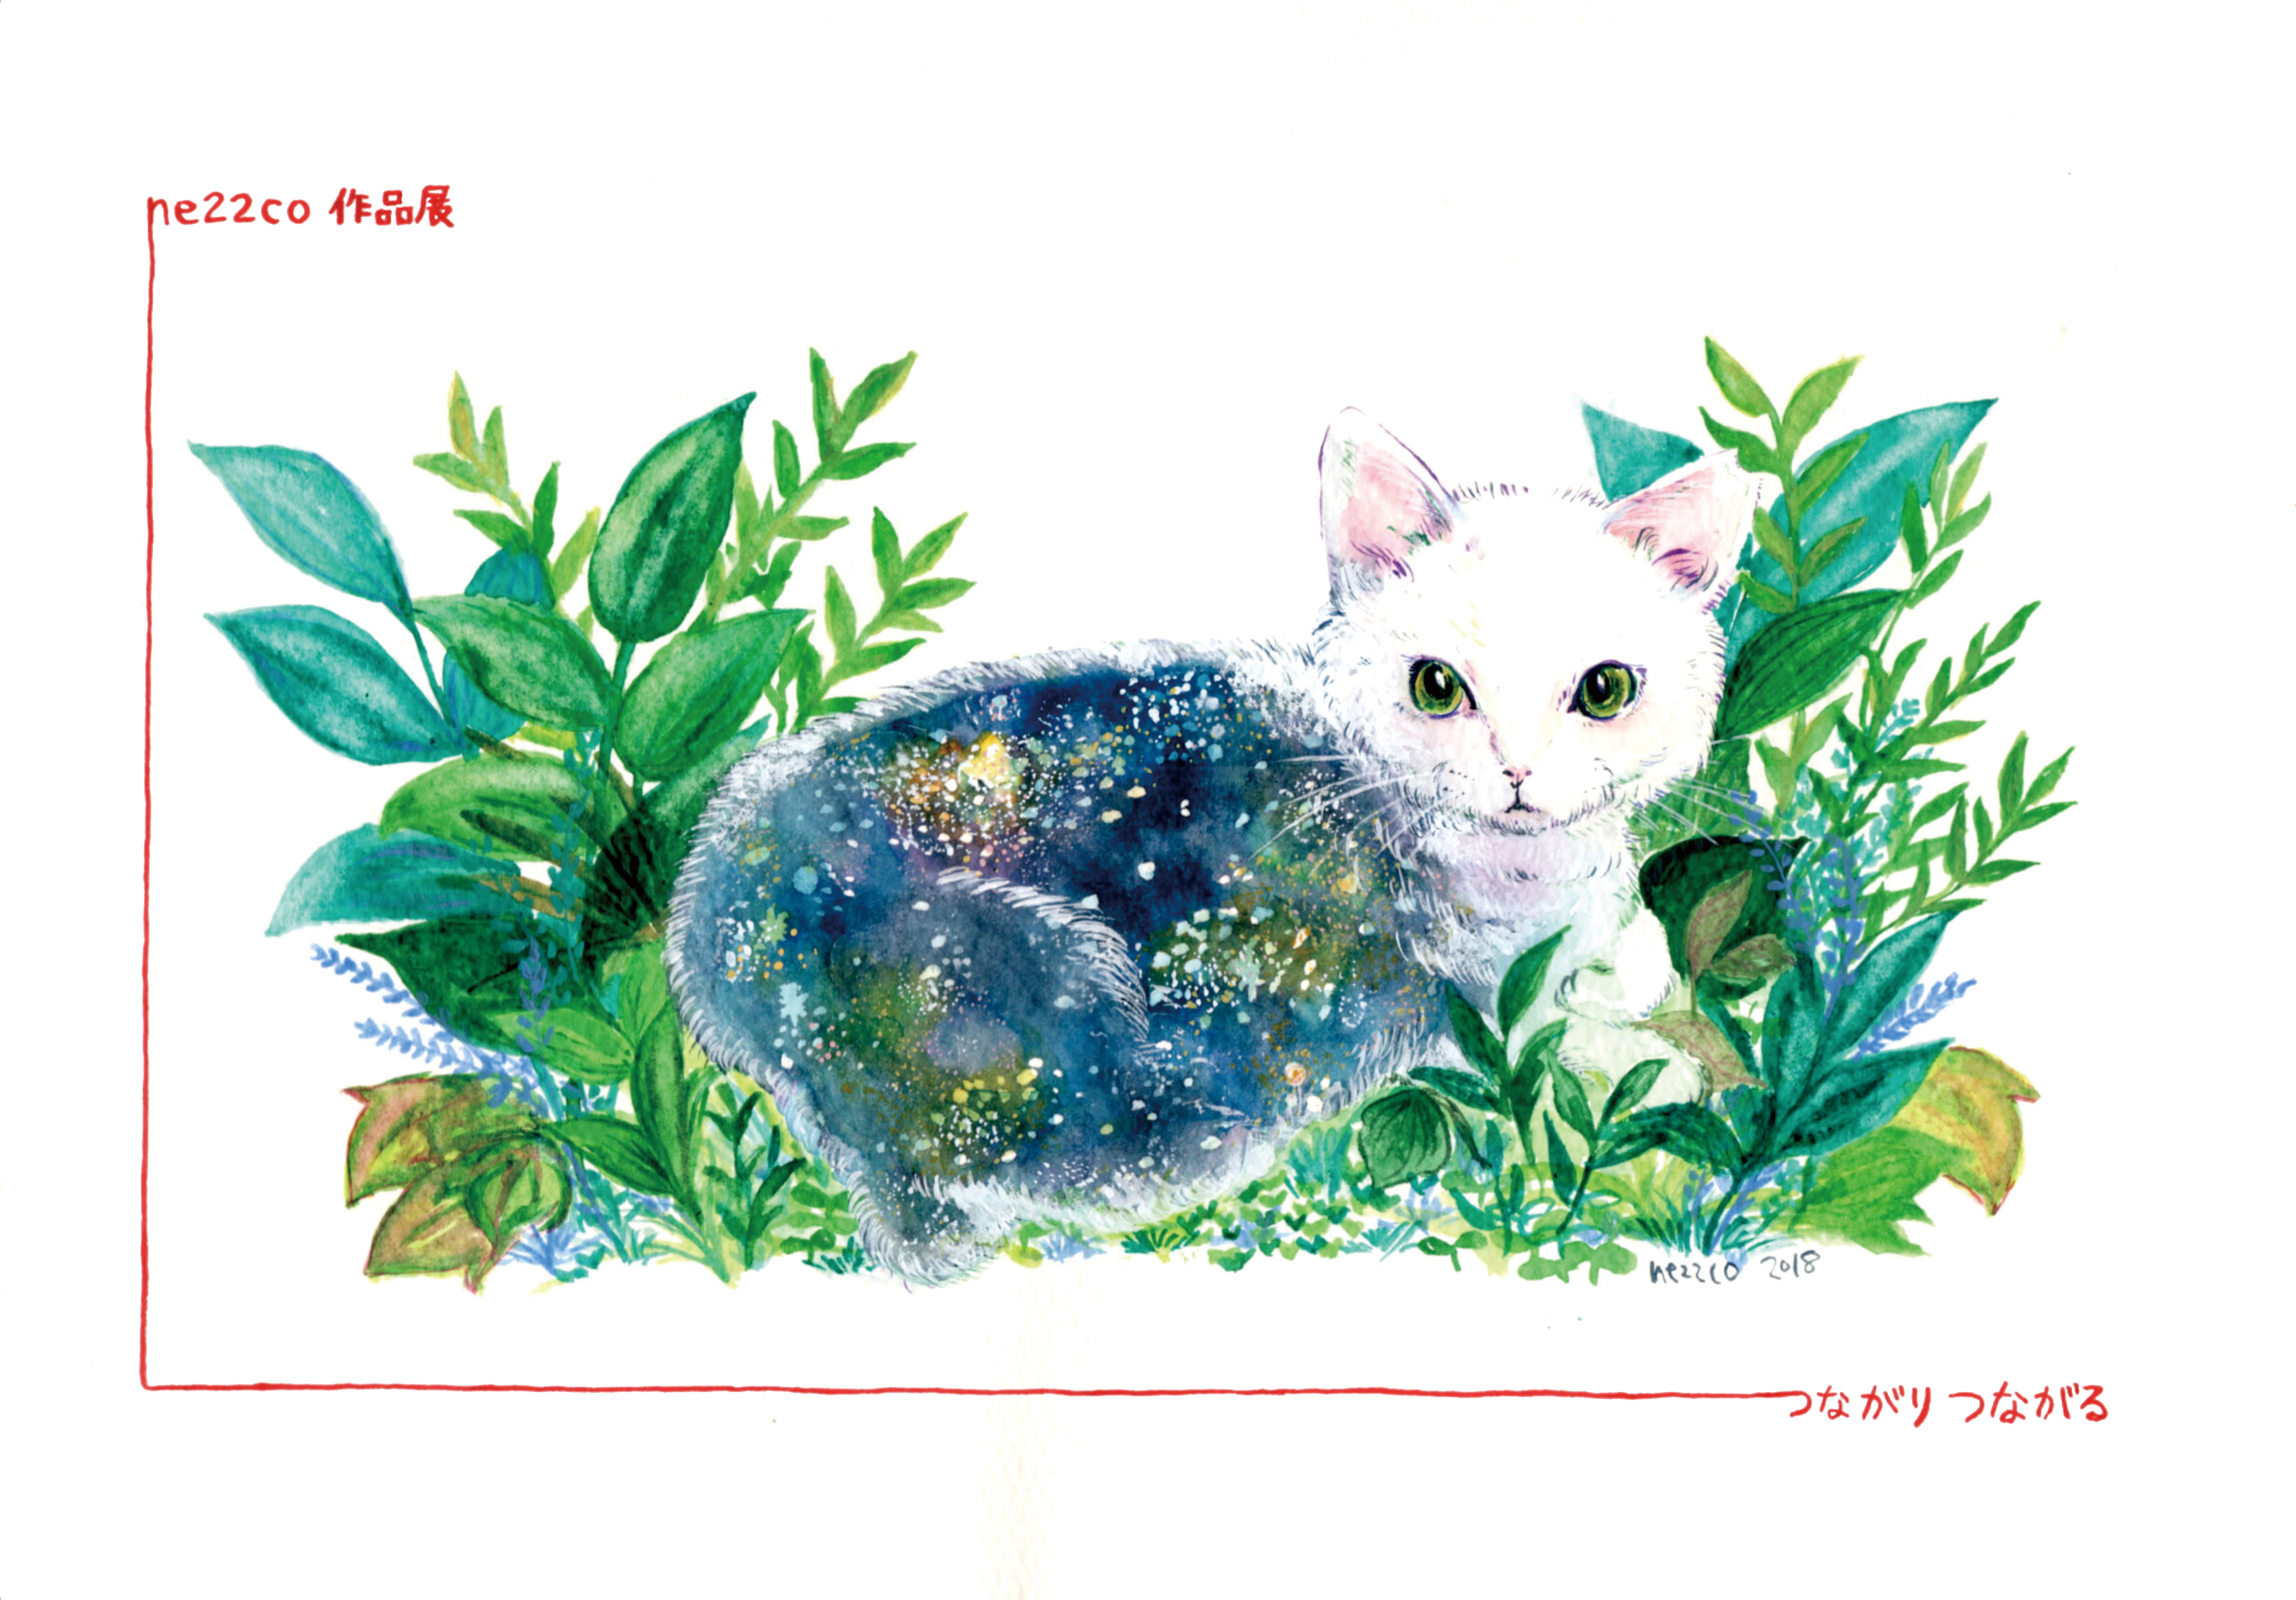 宇宙より深き豊かさ猫の色、吉祥寺で11/22から猫イラスト展が開催